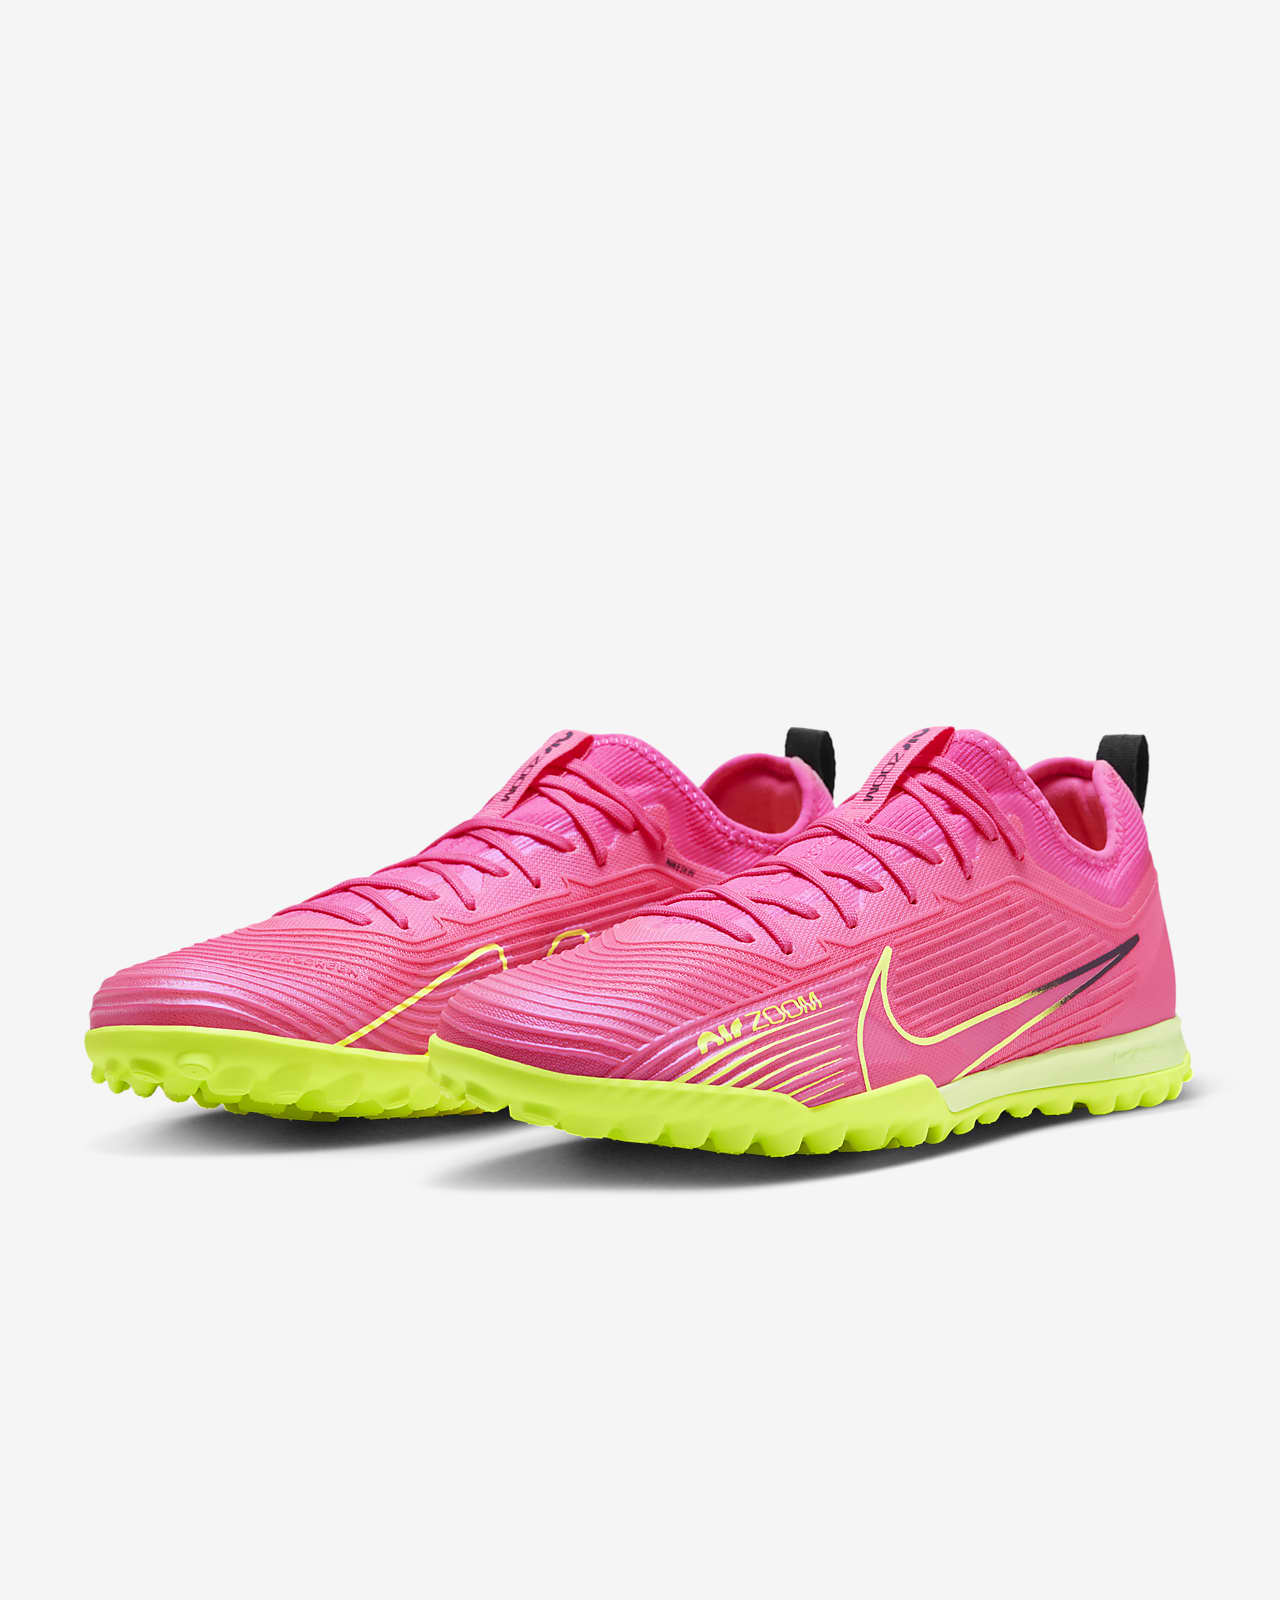 Vapor 15 Pro Turf Soccer Shoes. Nike.com